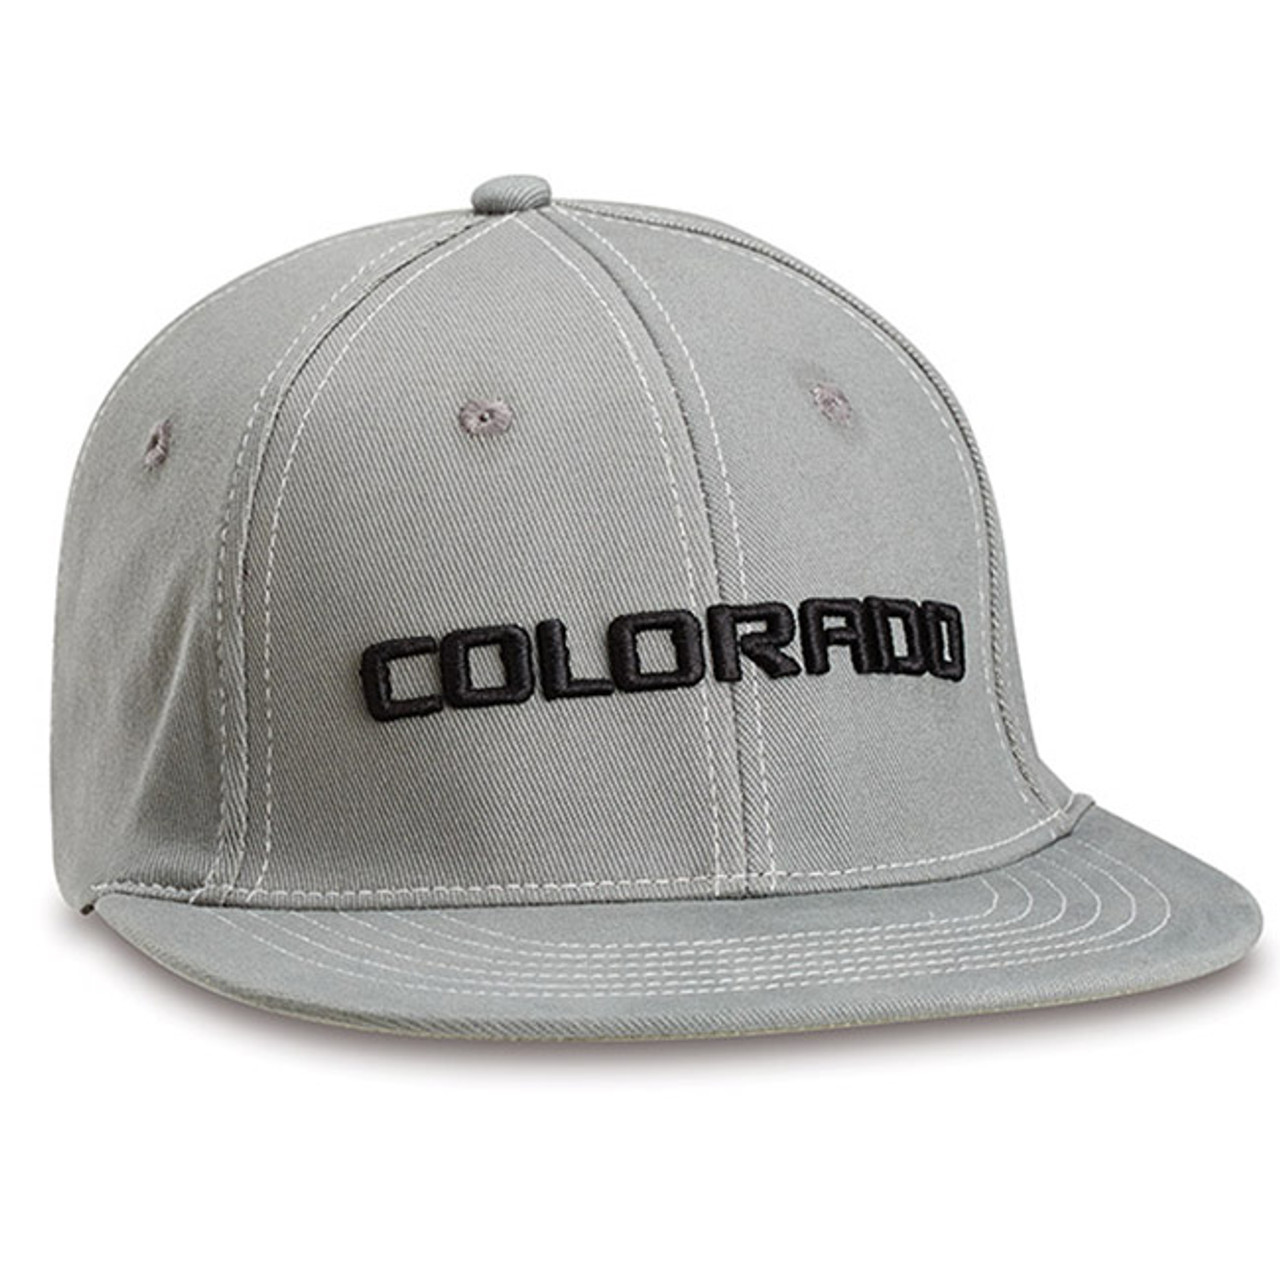 Chevy Colorado Gray Flex Hat